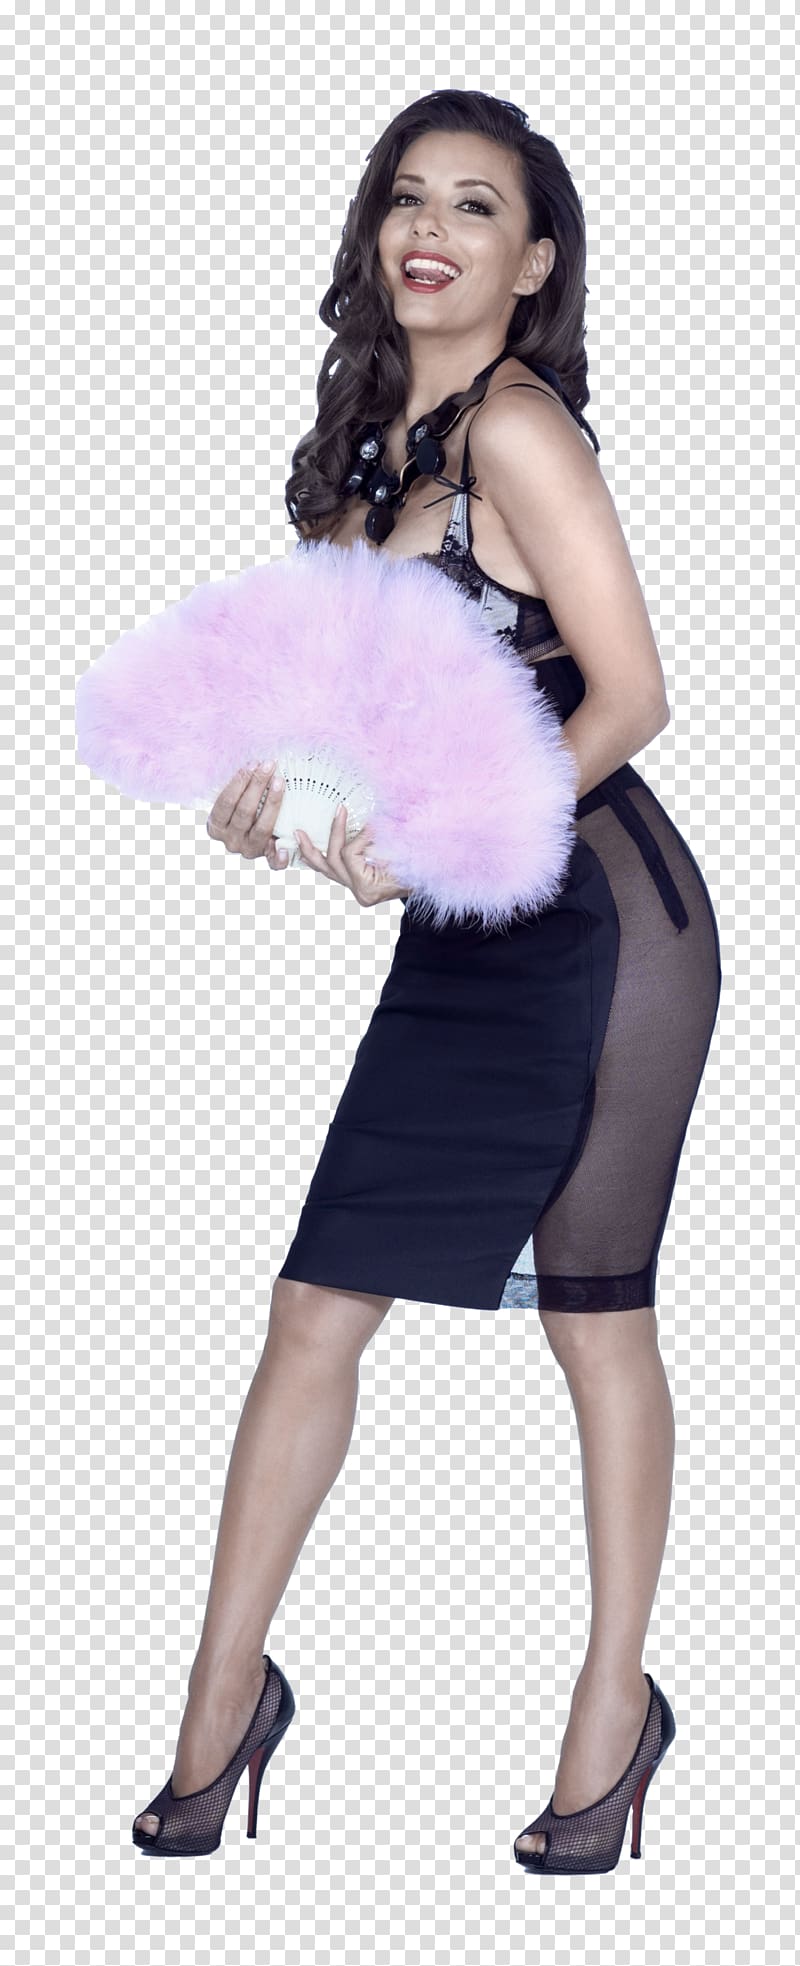 Eva Longoria Celebrity Actor, Eva Longoria File transparent background PNG clipart